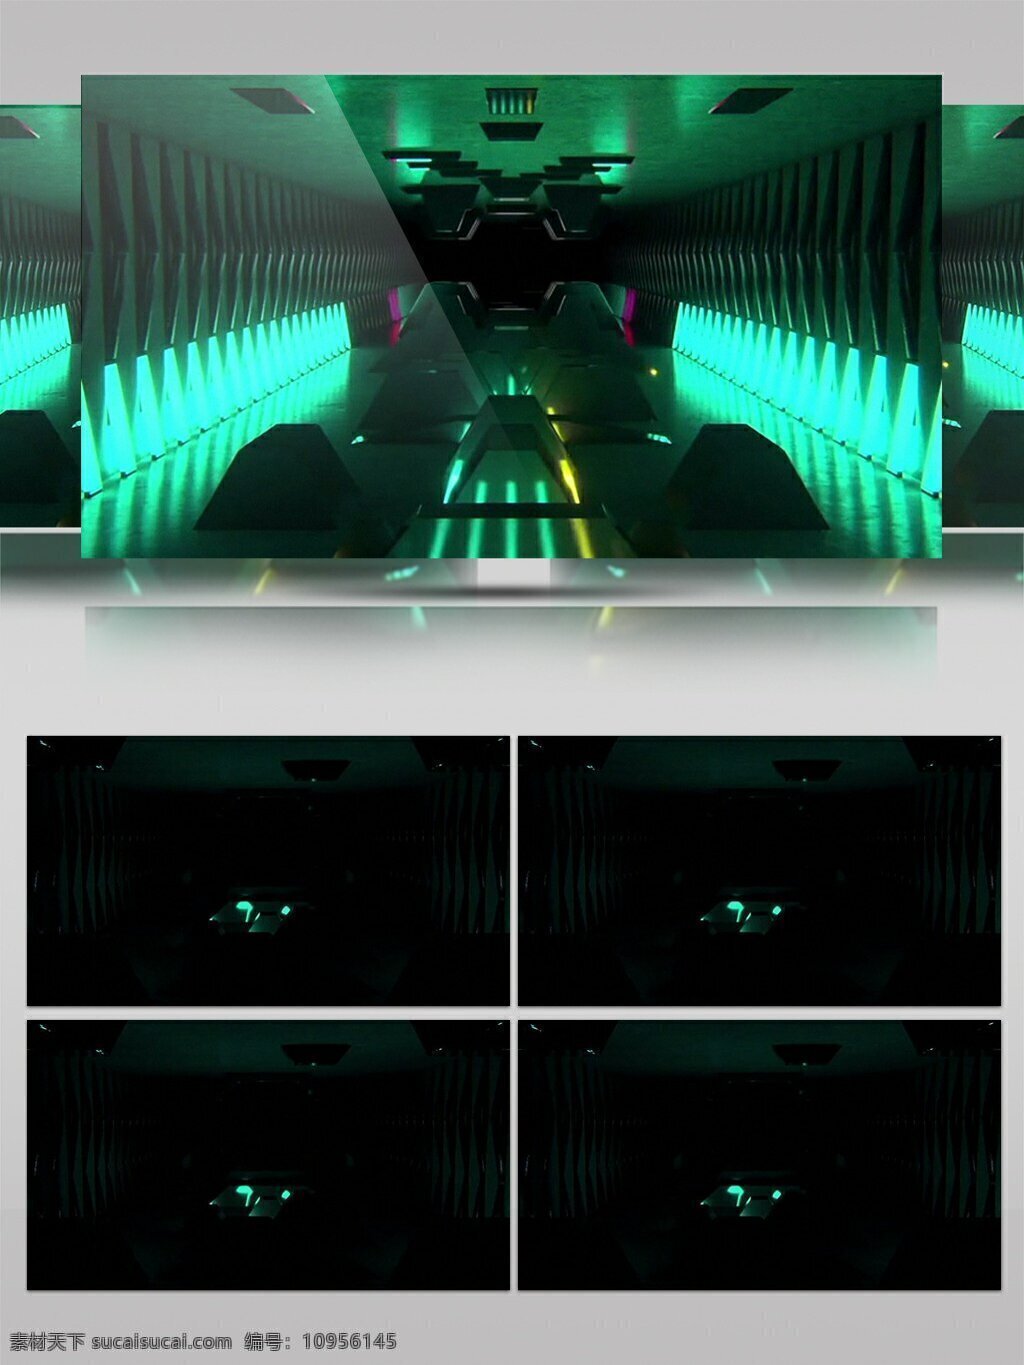 高清 时空 隧道 视频 动态视频素材 高清视频素材 经典 视频素材